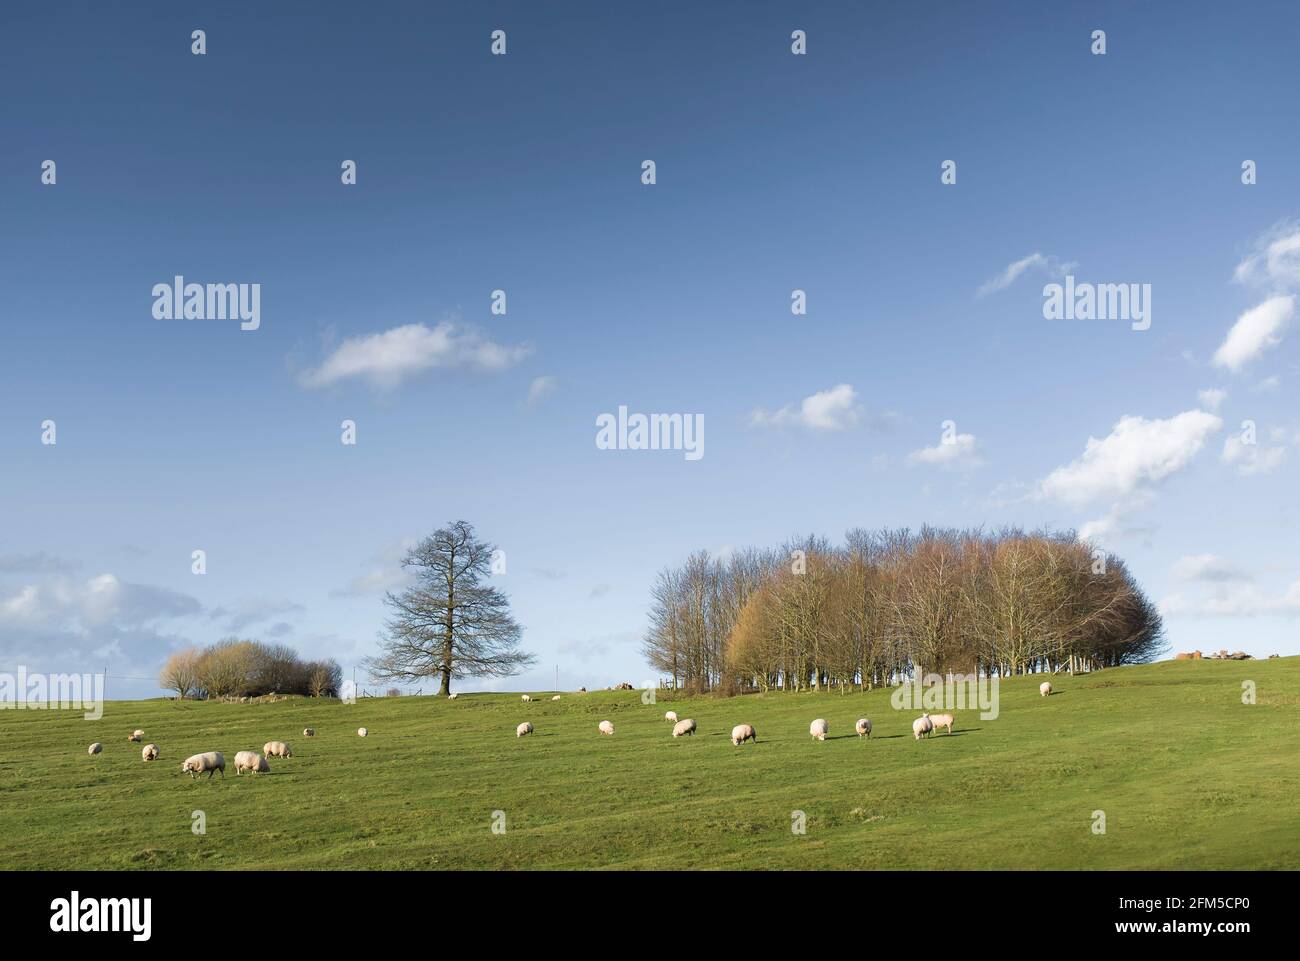 Britische Landwirtschaft, Farmszene. Schafe auf dem Feld im Winter (Februar), mit Bäumen auf einem Hügel und blauen Himmel. Buckinghamshire, England Stockfoto